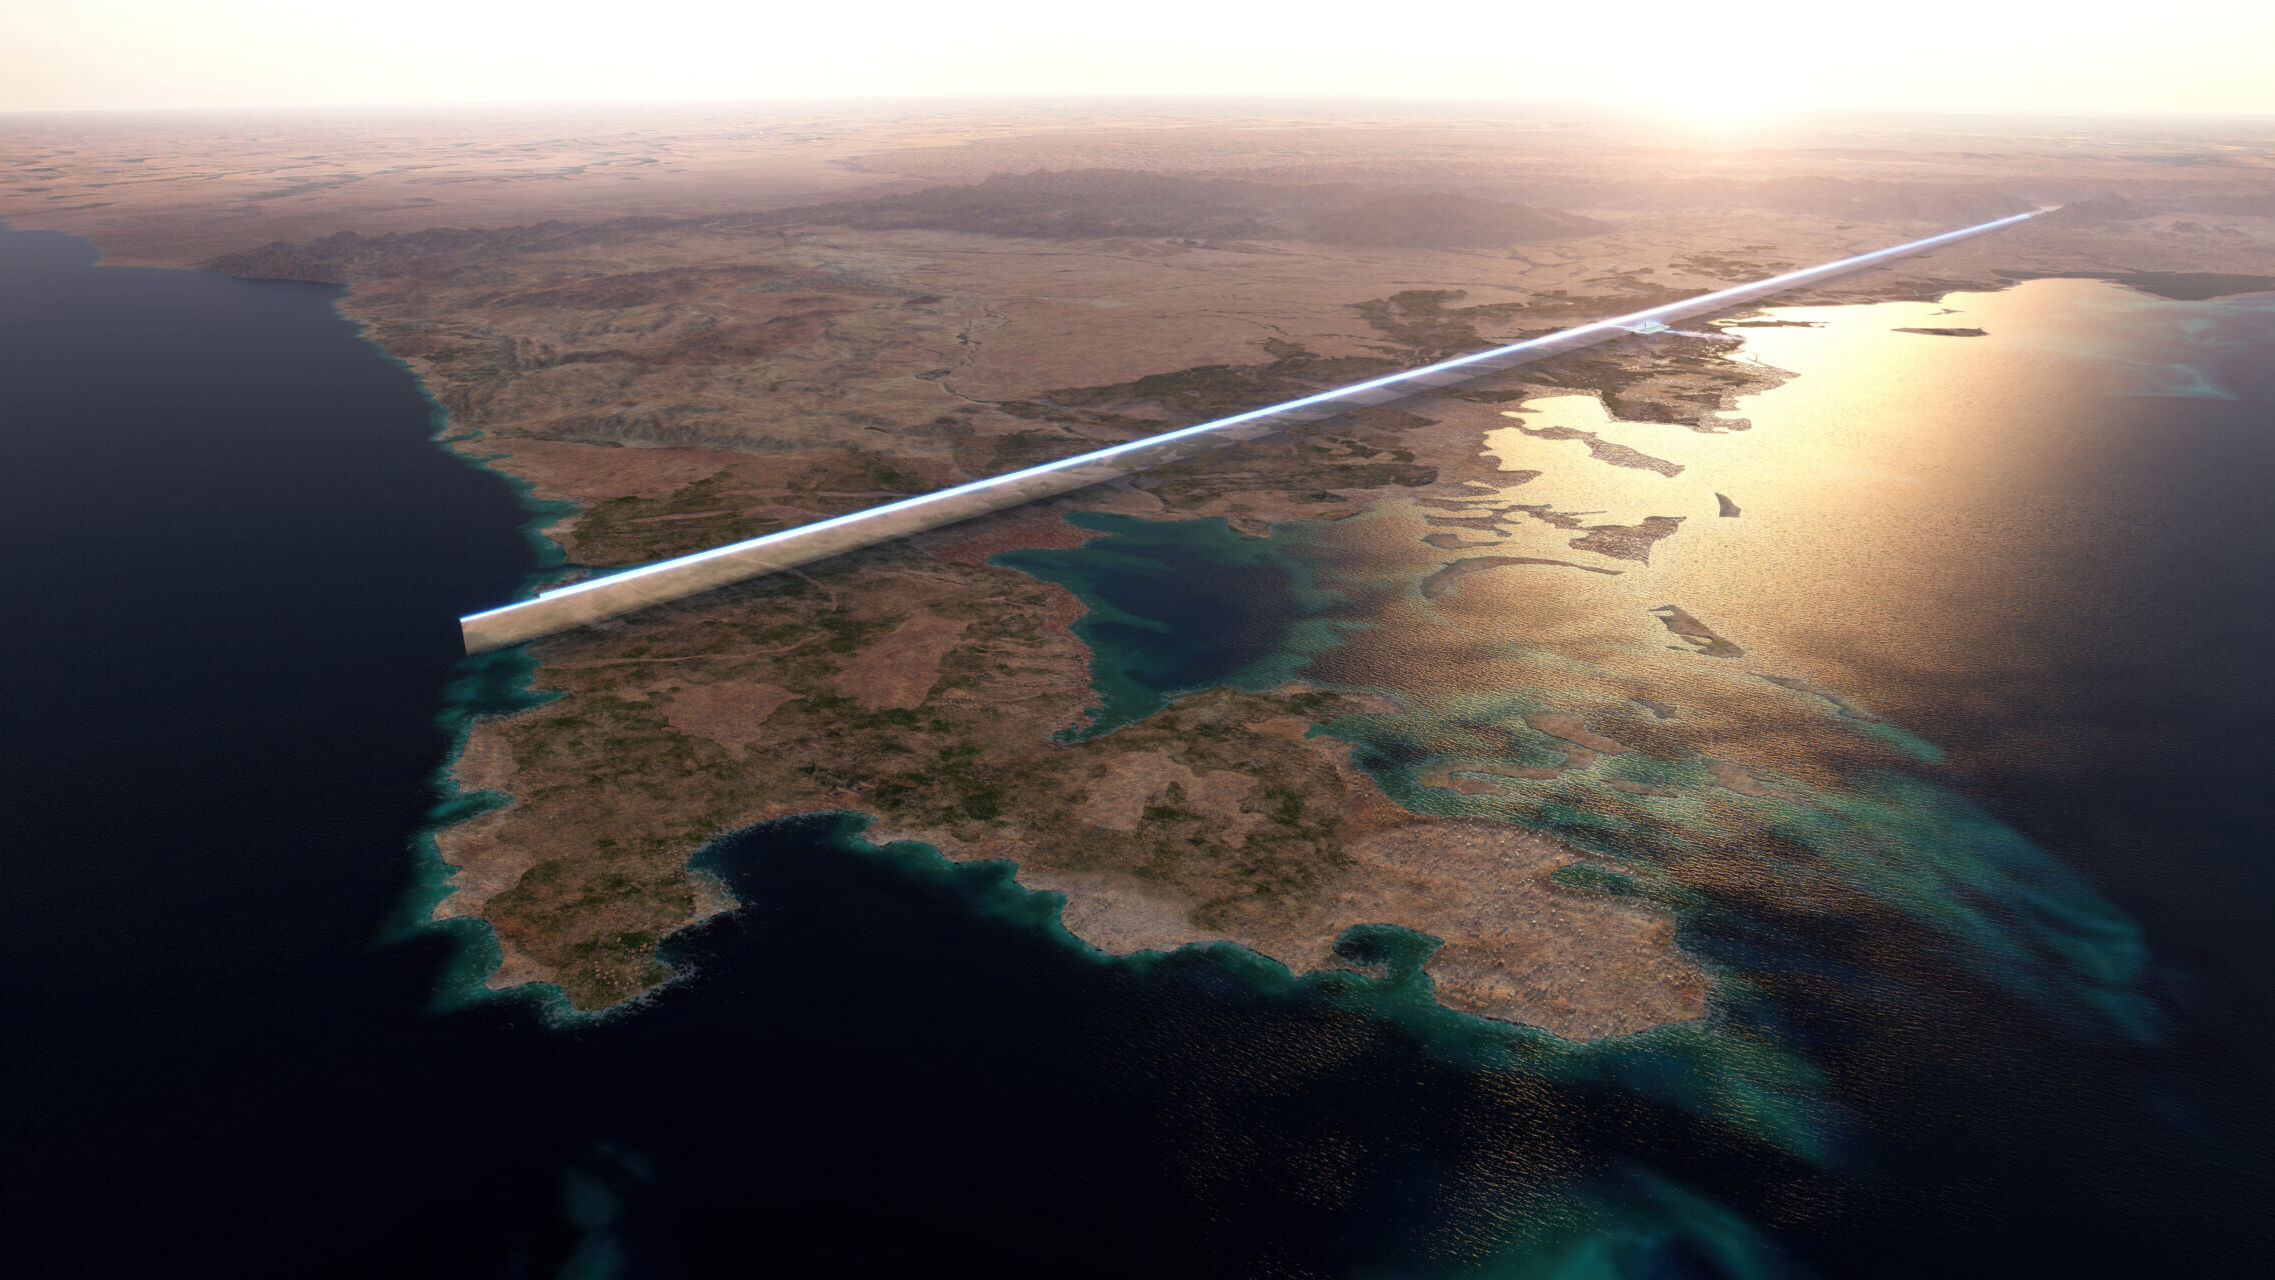 Lunga 170 km, “The Line” in Arabia Saudita sarà la prima città lineare al mondo